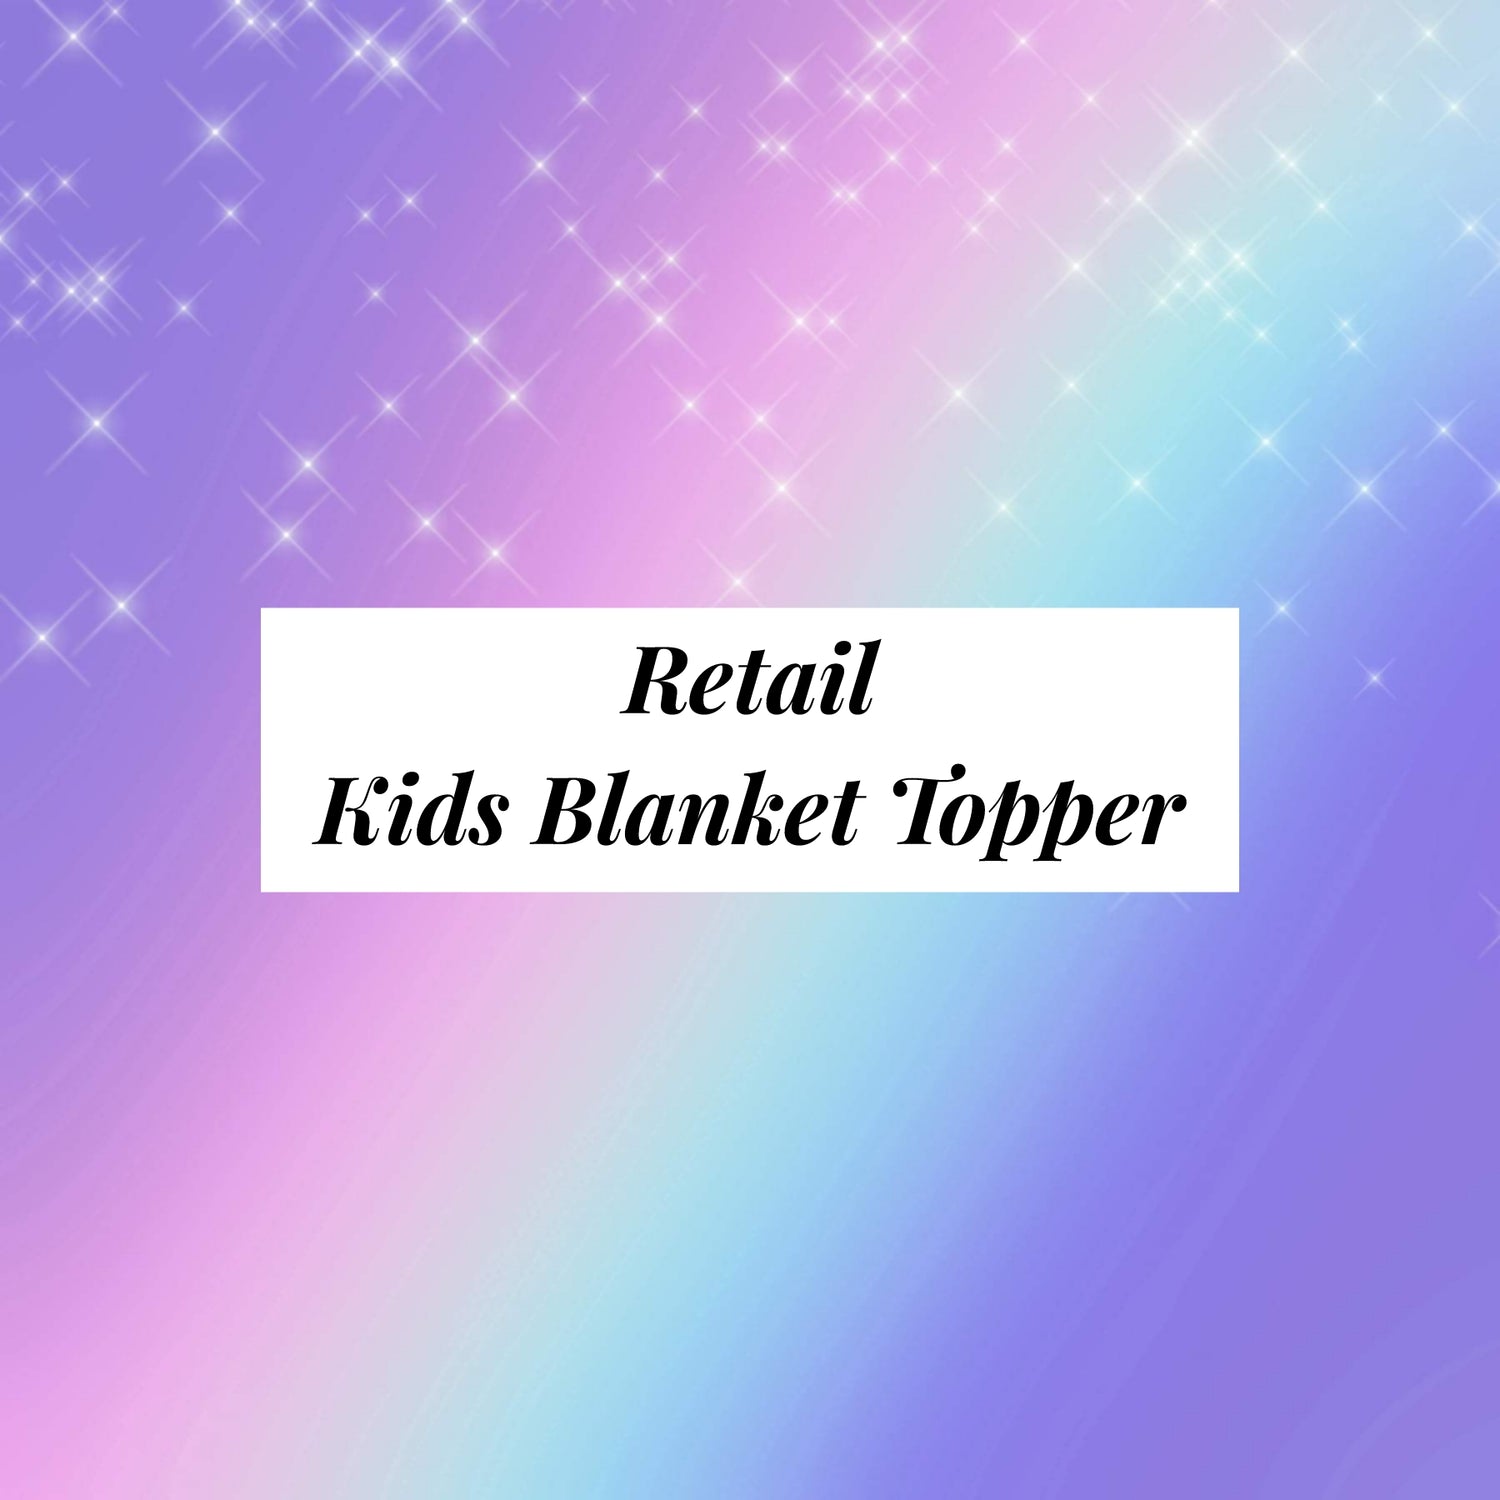 Retail Toddler/Child Blanket Topper